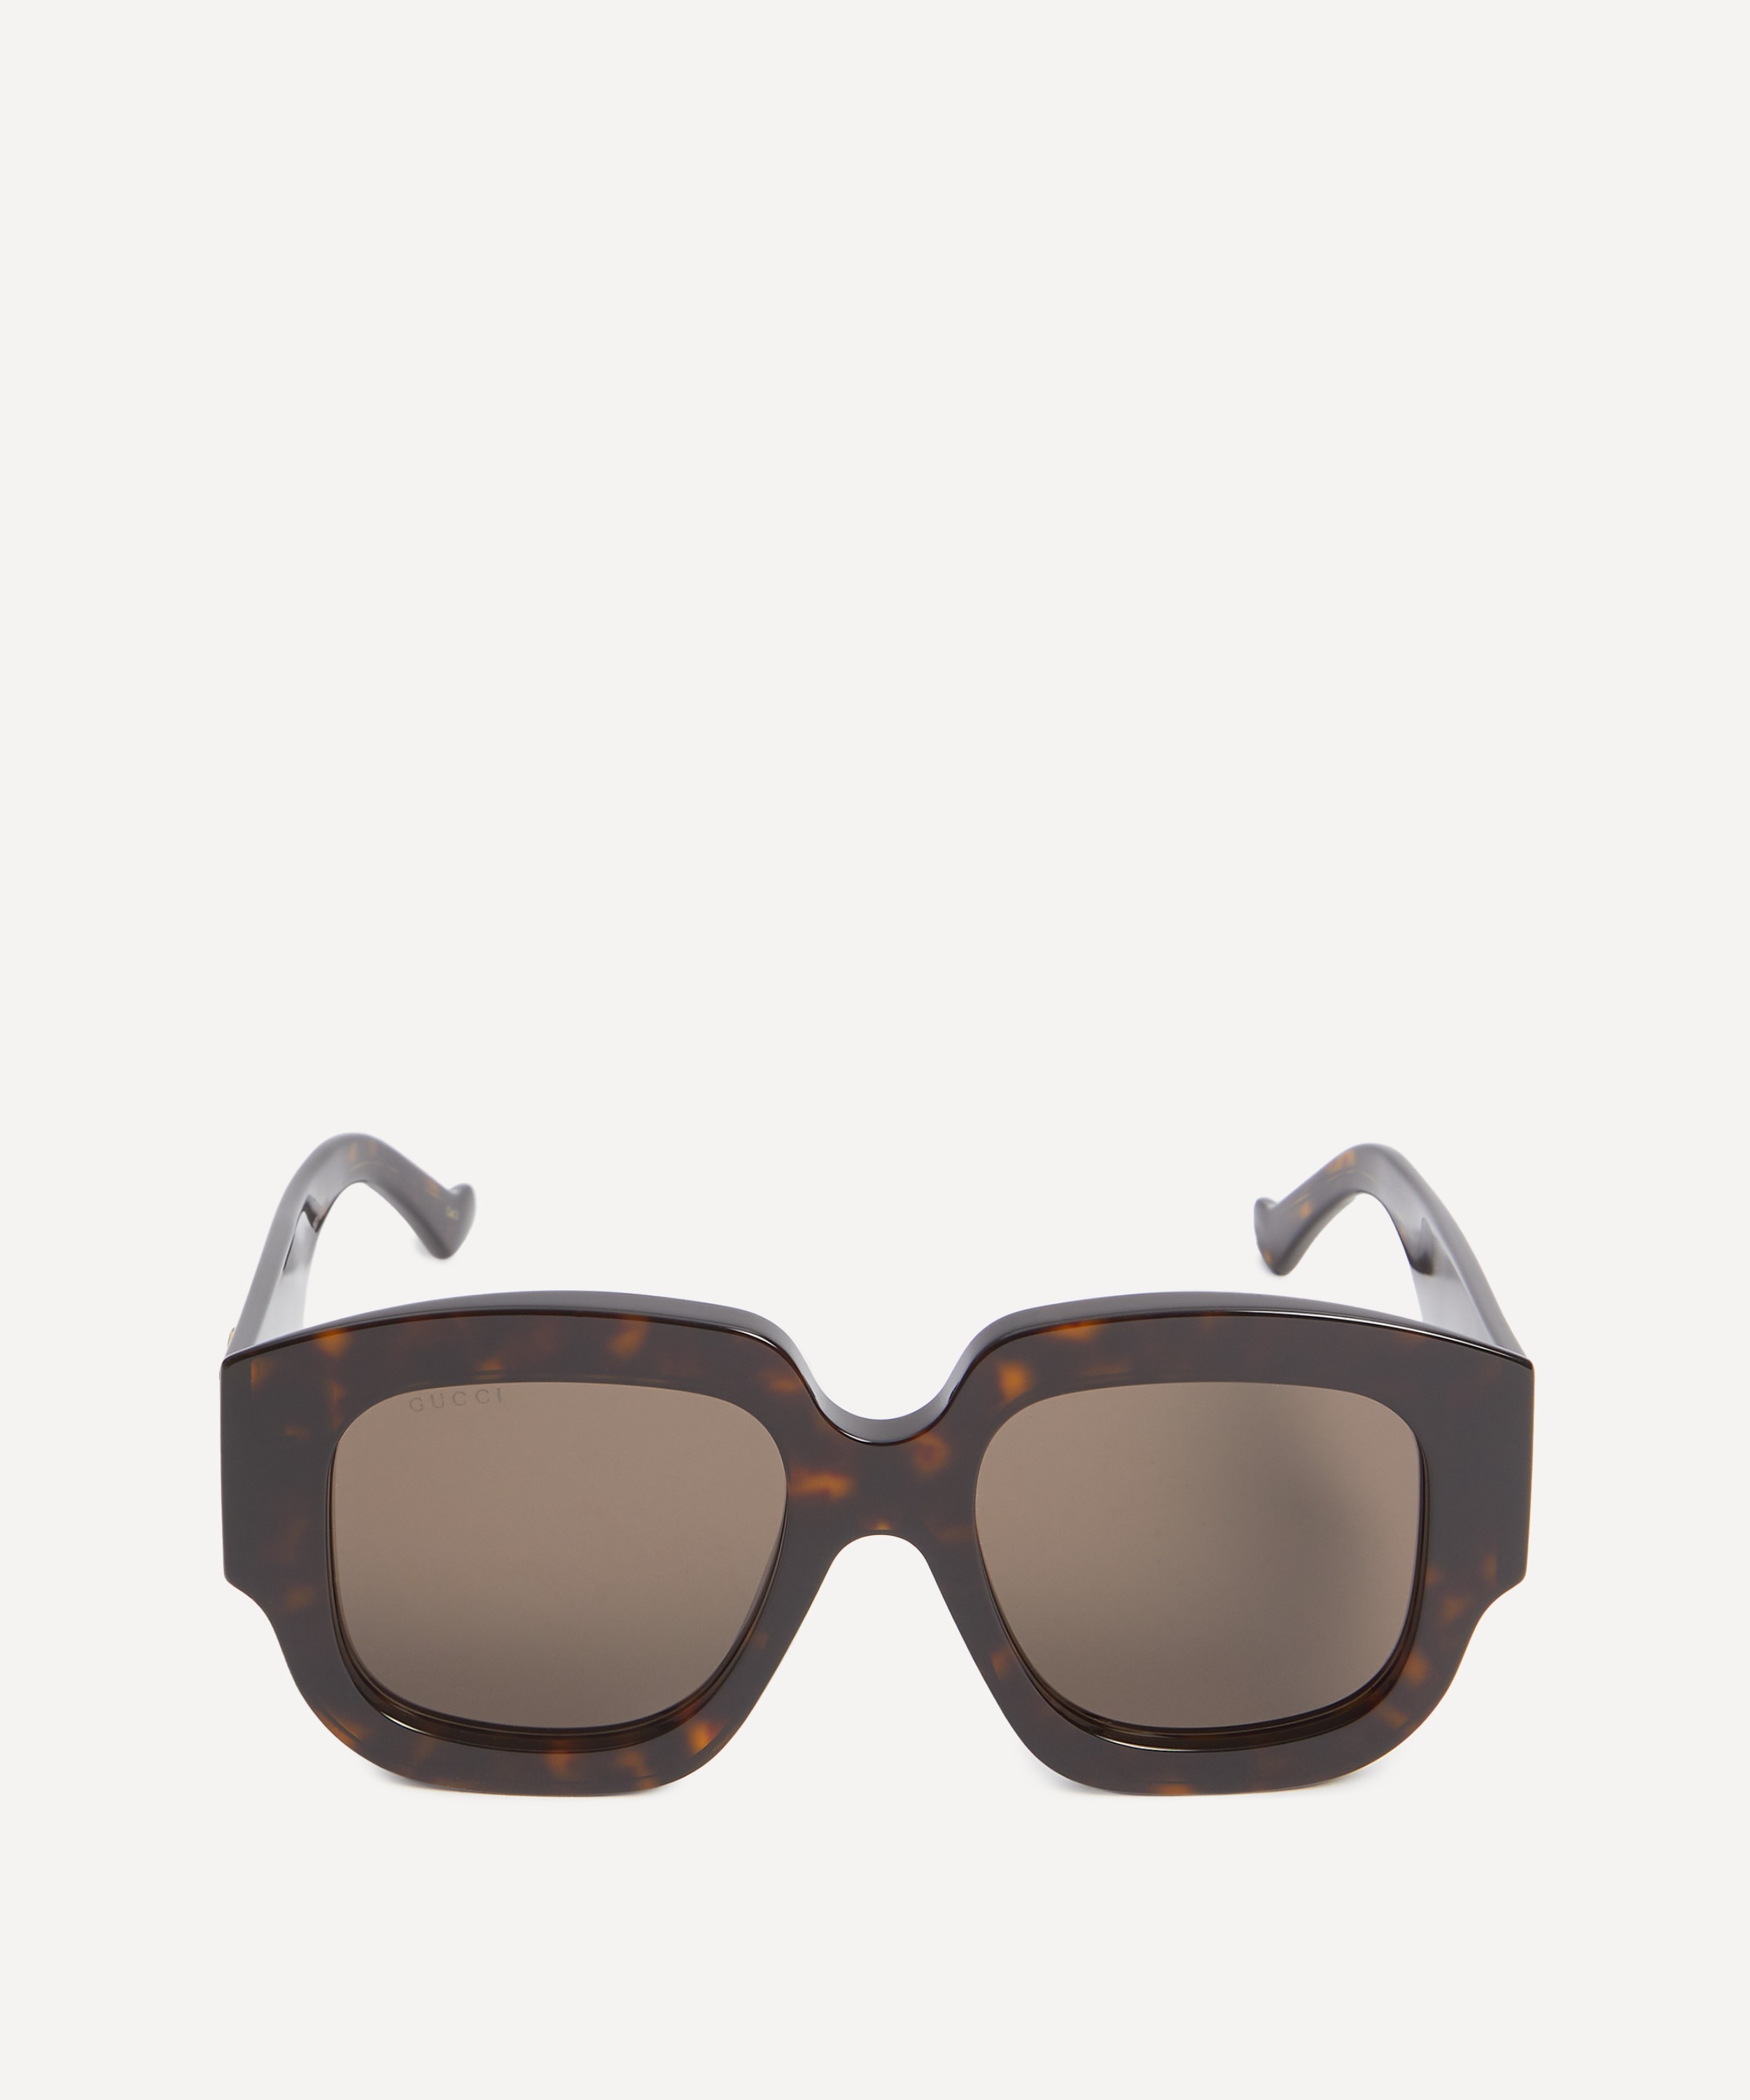 Gucci - Oversized Square Sunglasses